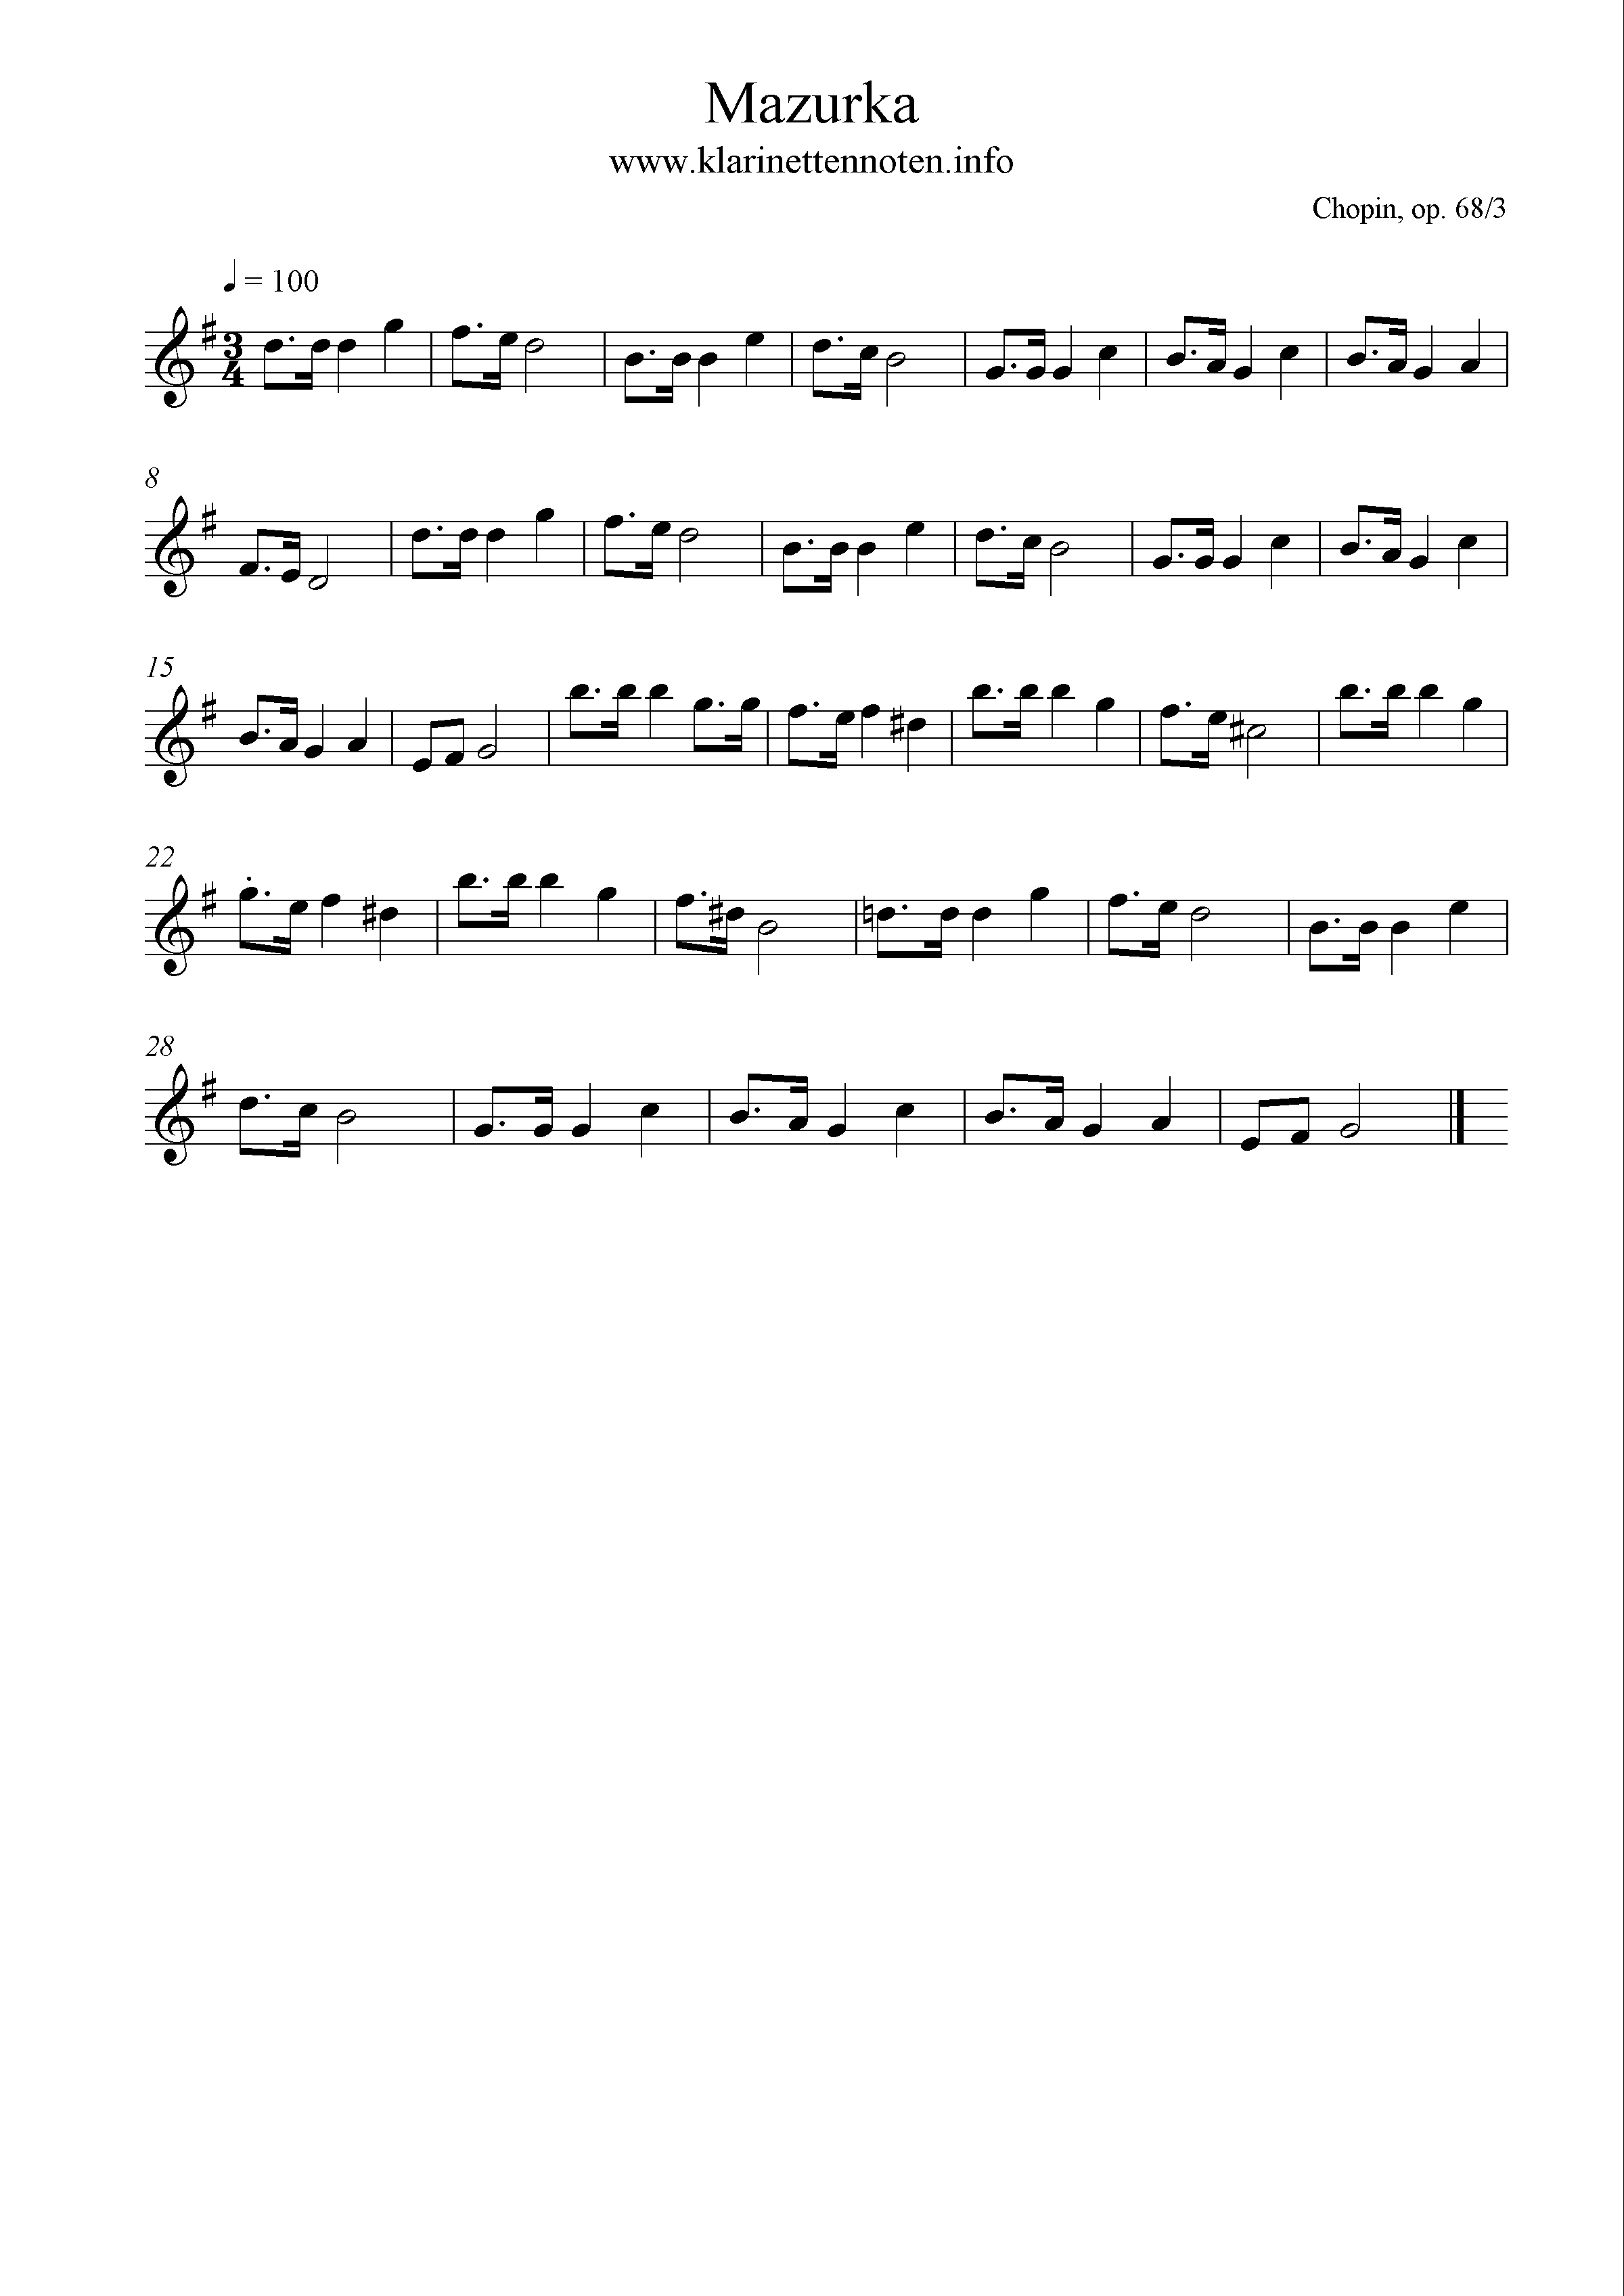 Mazurka in F, op. 68/3, Chopin, Noten